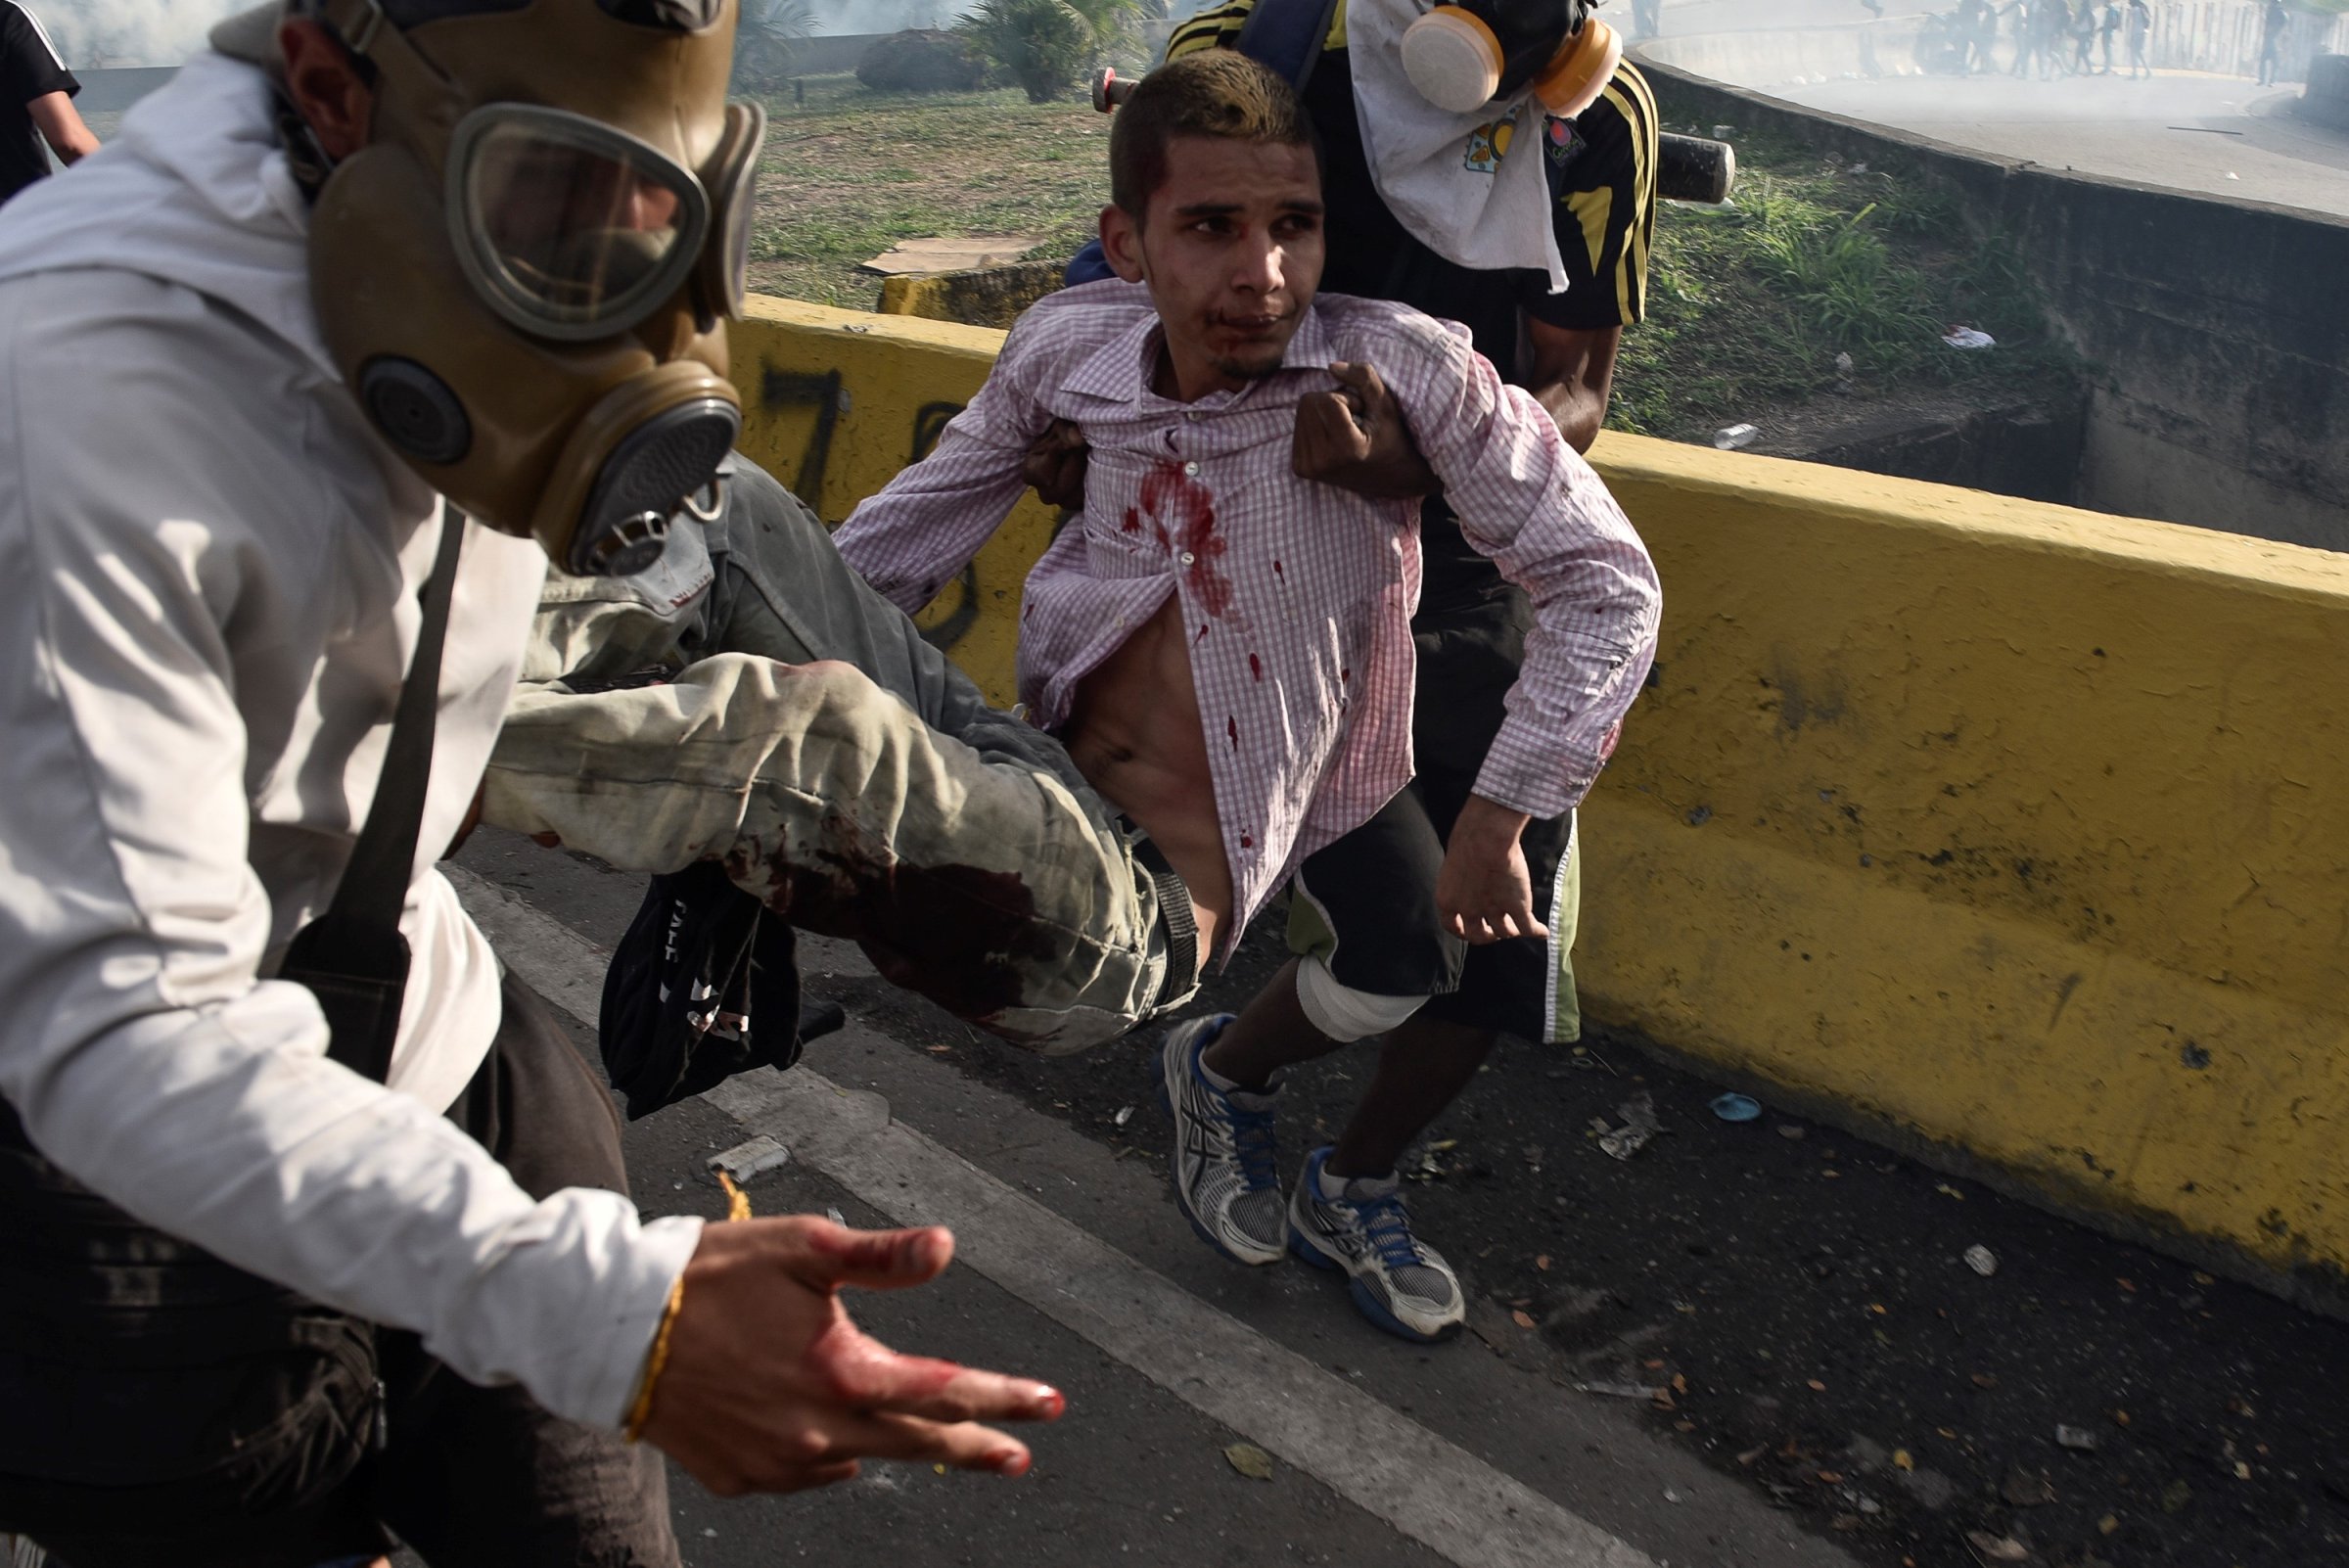 Protests continue in Venezuela